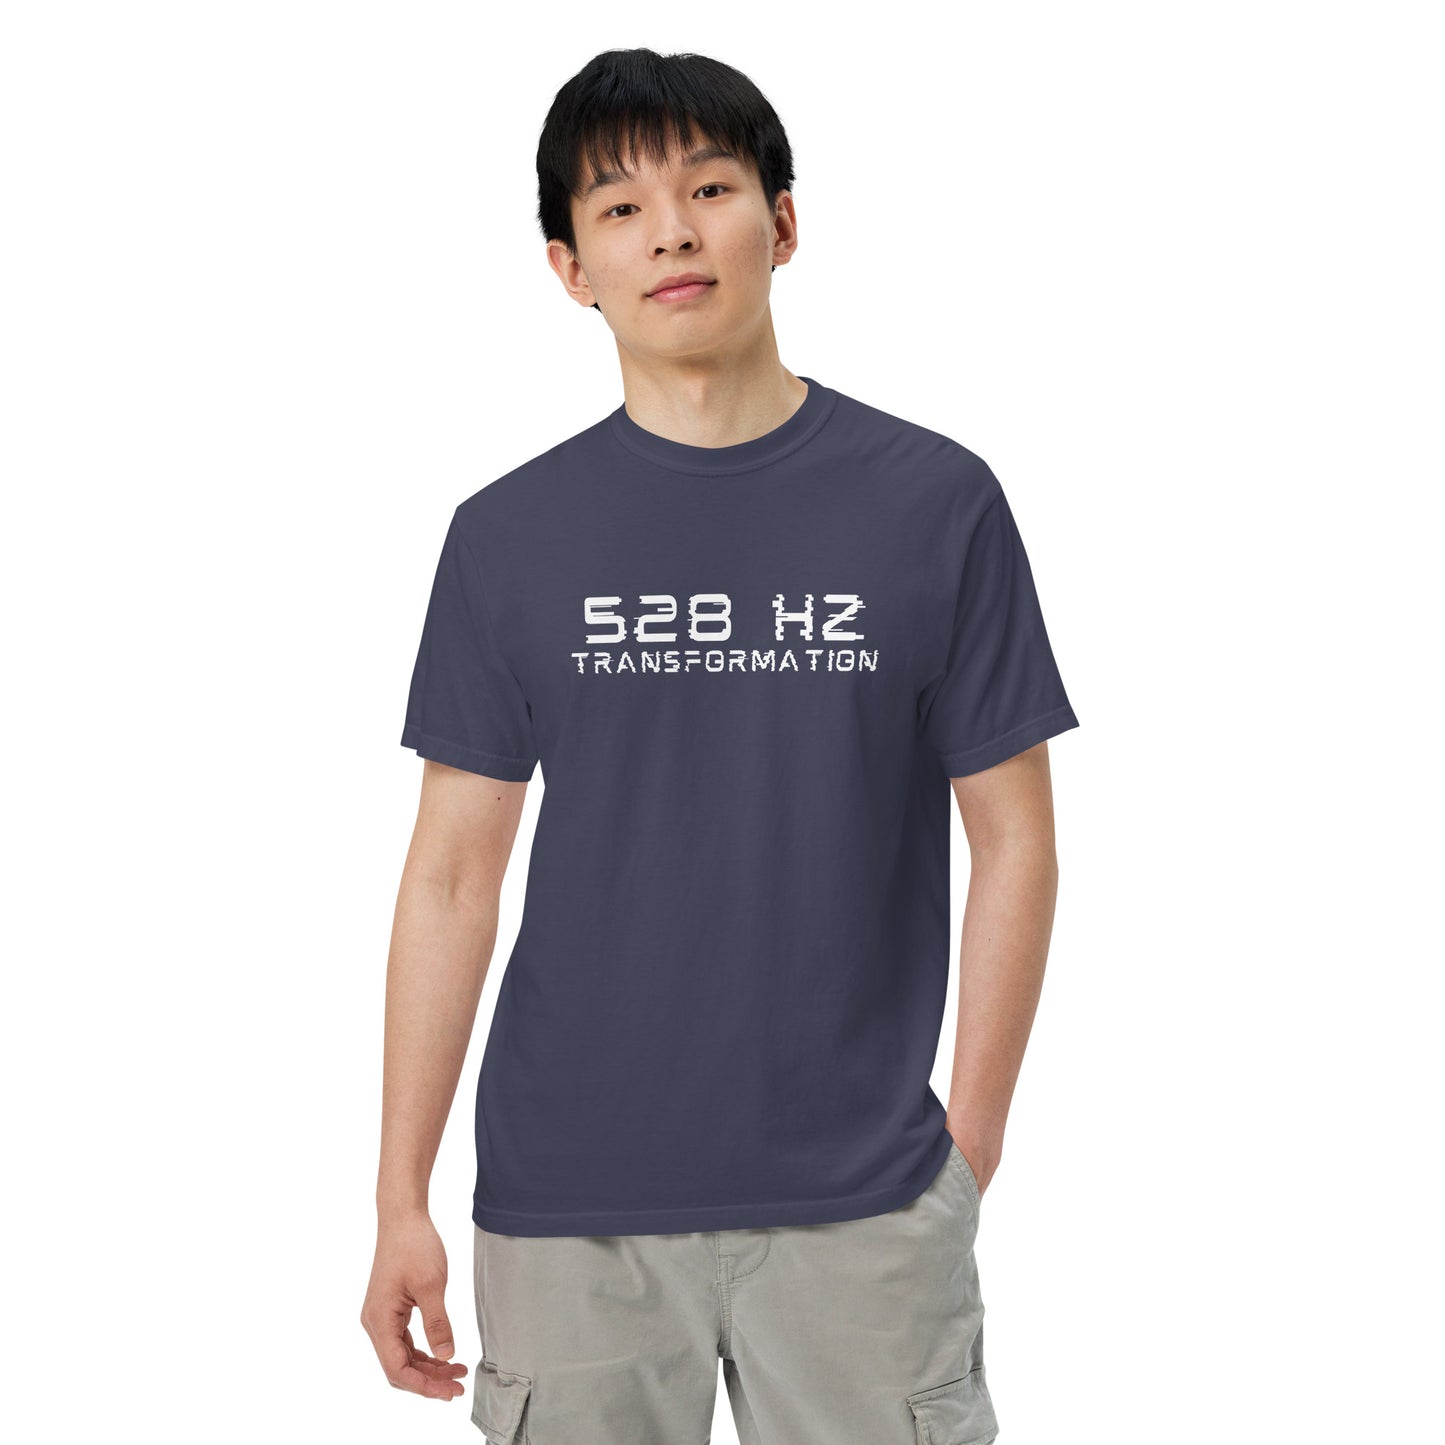 528 Hz Transformation Men’s garment-dyed heavyweight t-shirt